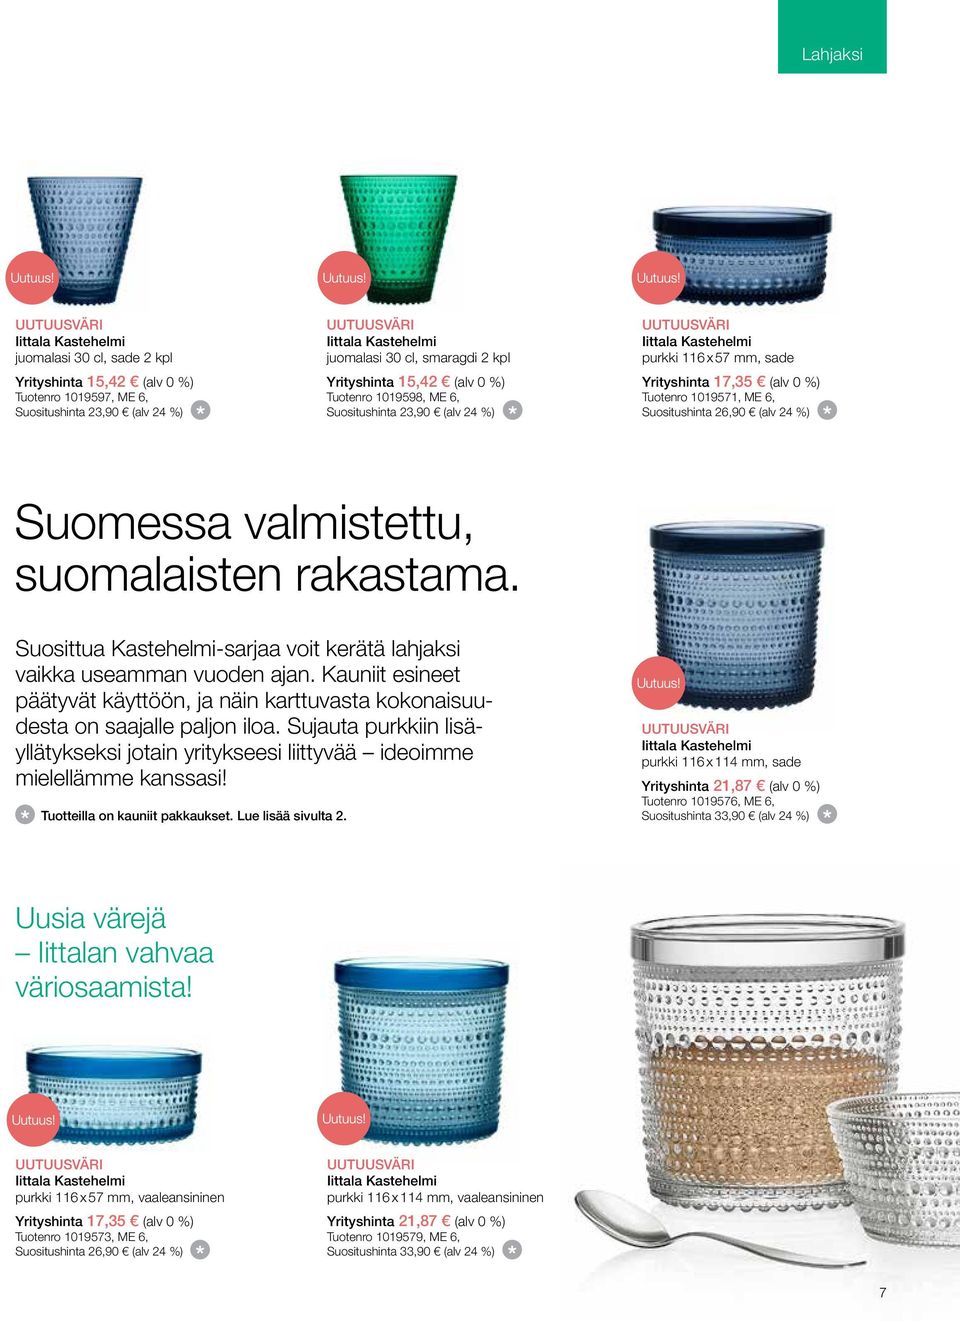 ME 6, Suositushinta 26,90 (alv 24 %) Suomessa valmistettu, suomalaisten rakastama. Suosittua Kastehelmi-sarjaa voit kerätä lahjaksi vaikka useamman vuoden ajan.